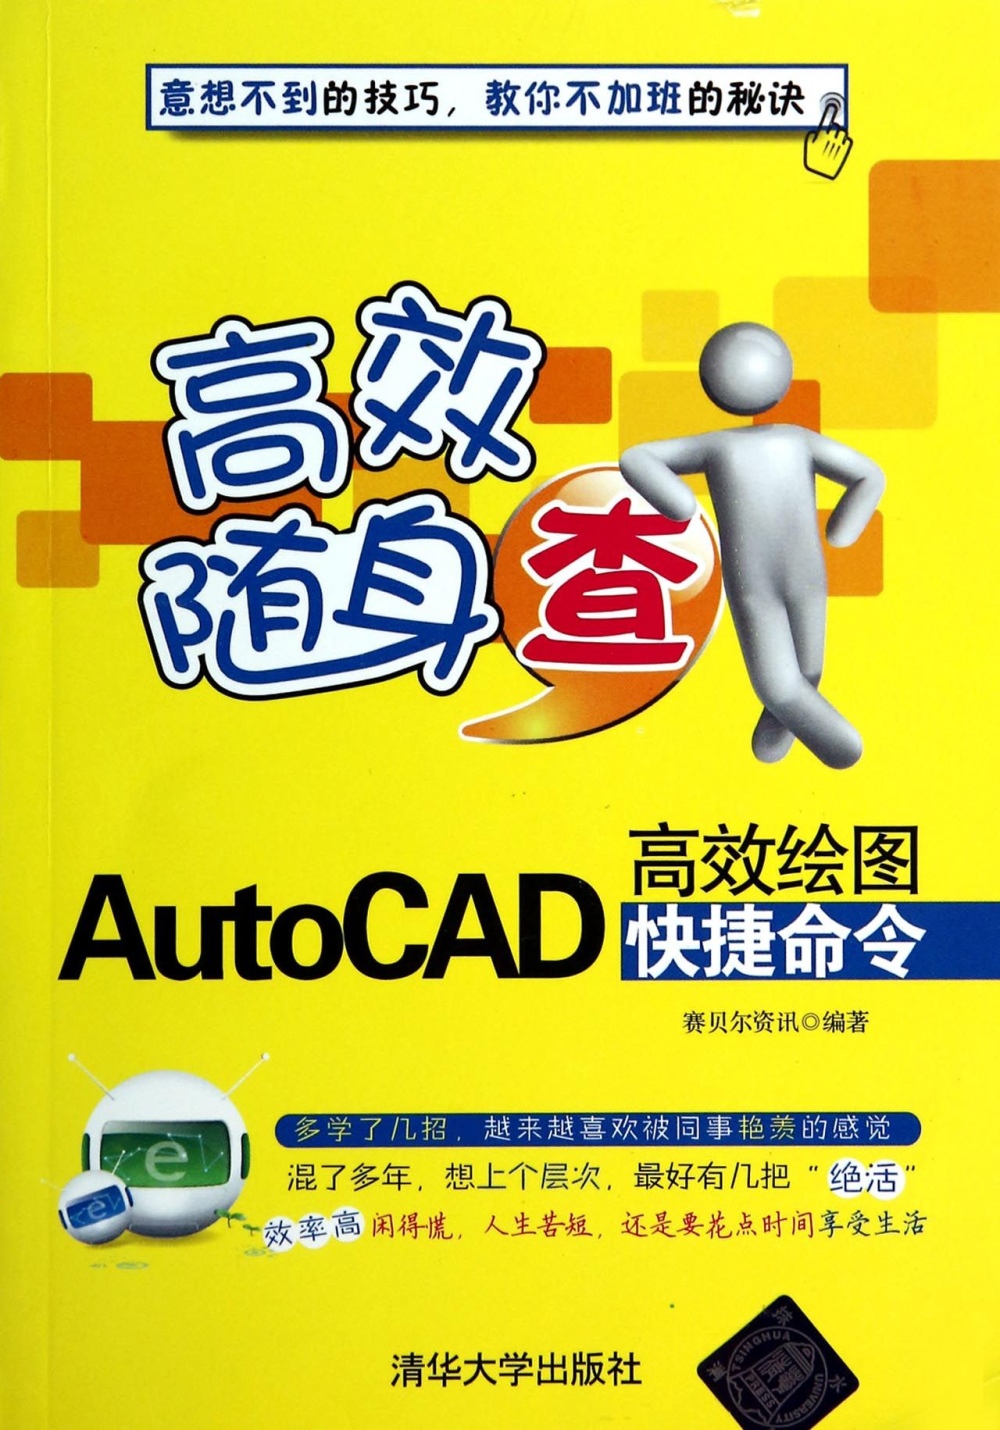 AutoCAD高效繪圖快捷命令